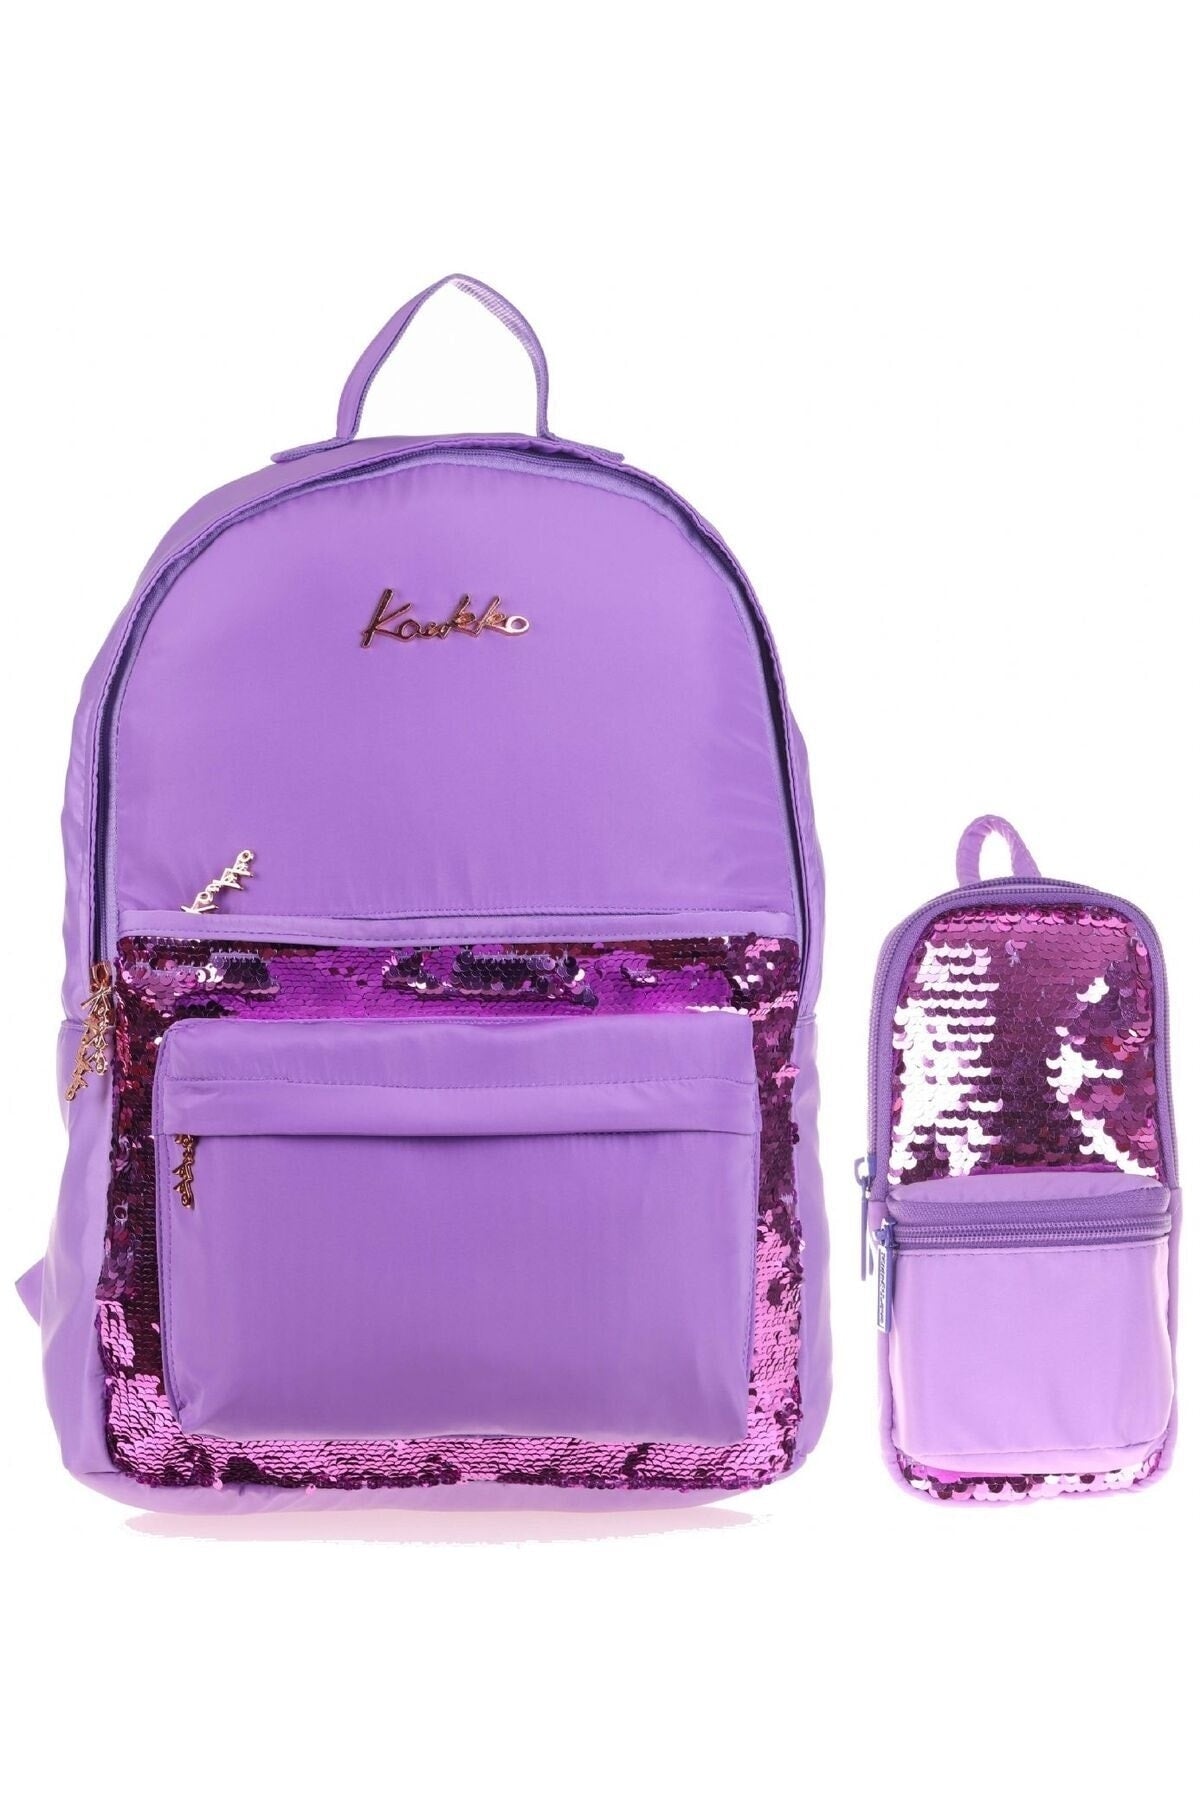 Llia Sequin School Bag and Pencil Holder Set - Girls